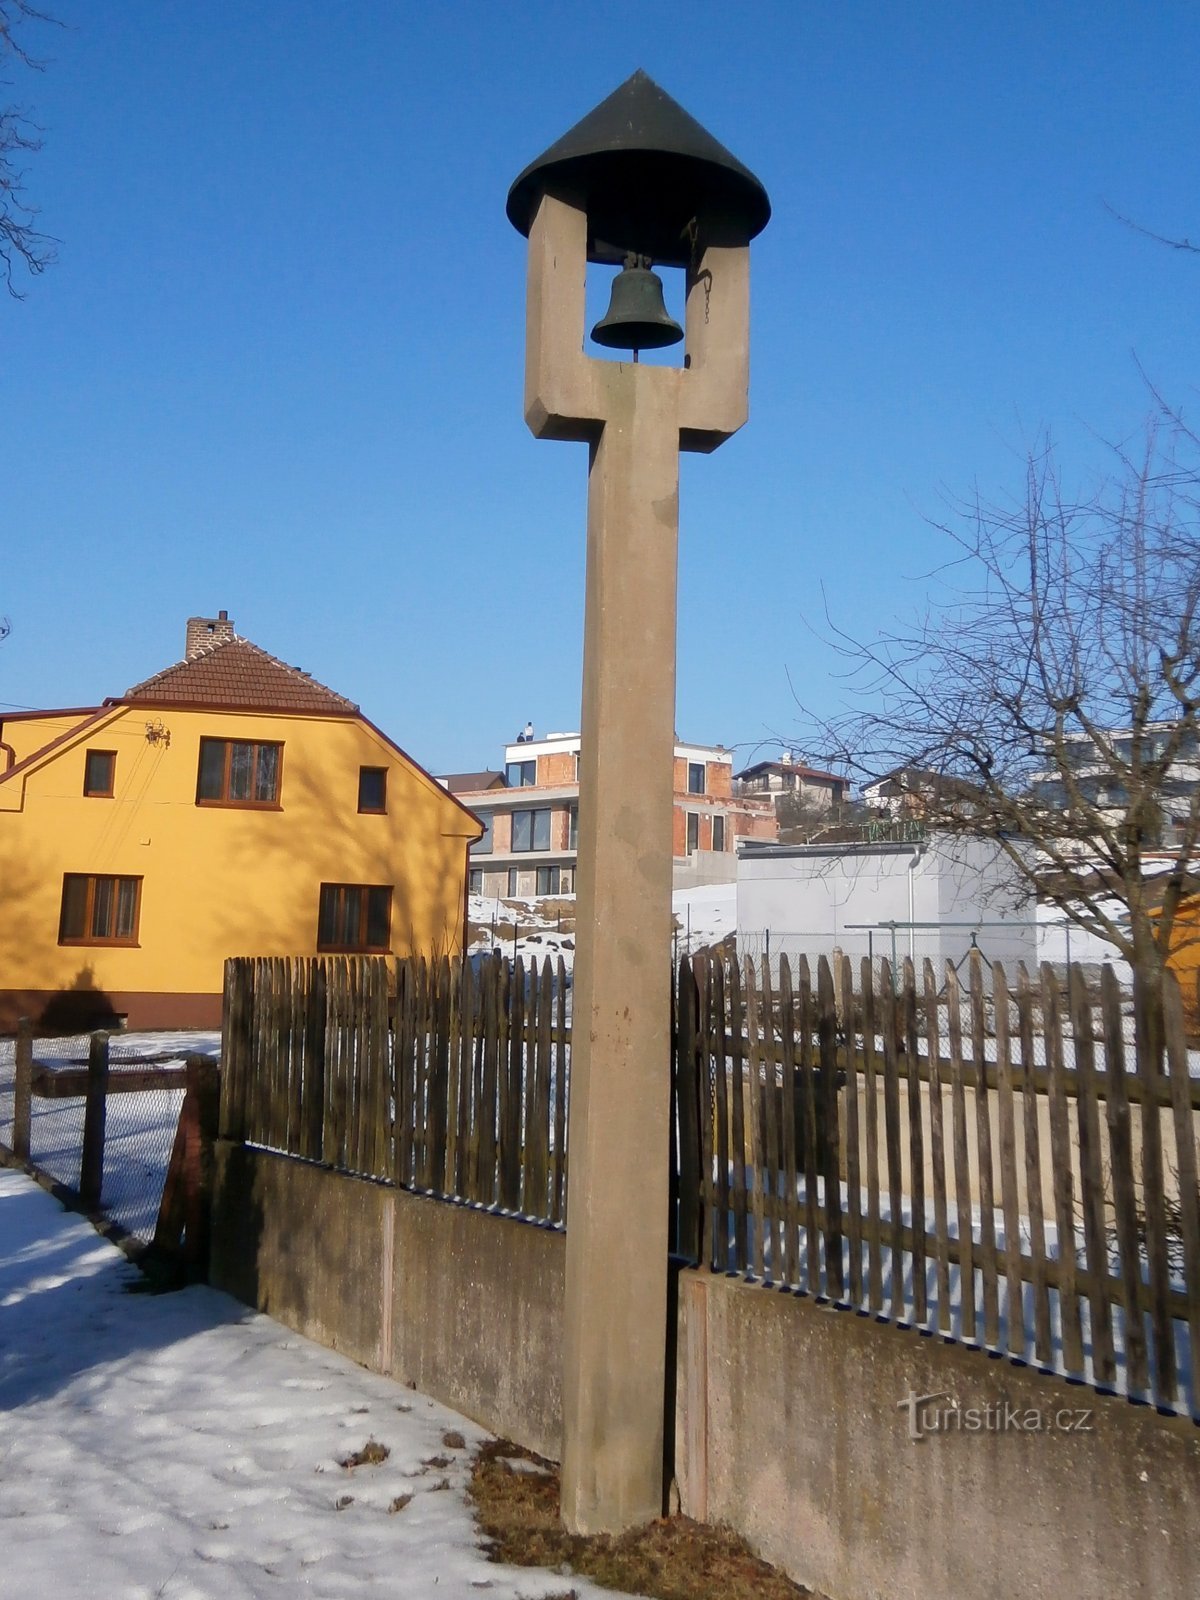 Hlavní 街的钟楼 (Hradec Králové, 14.2.2017/XNUMX/XNUMX)